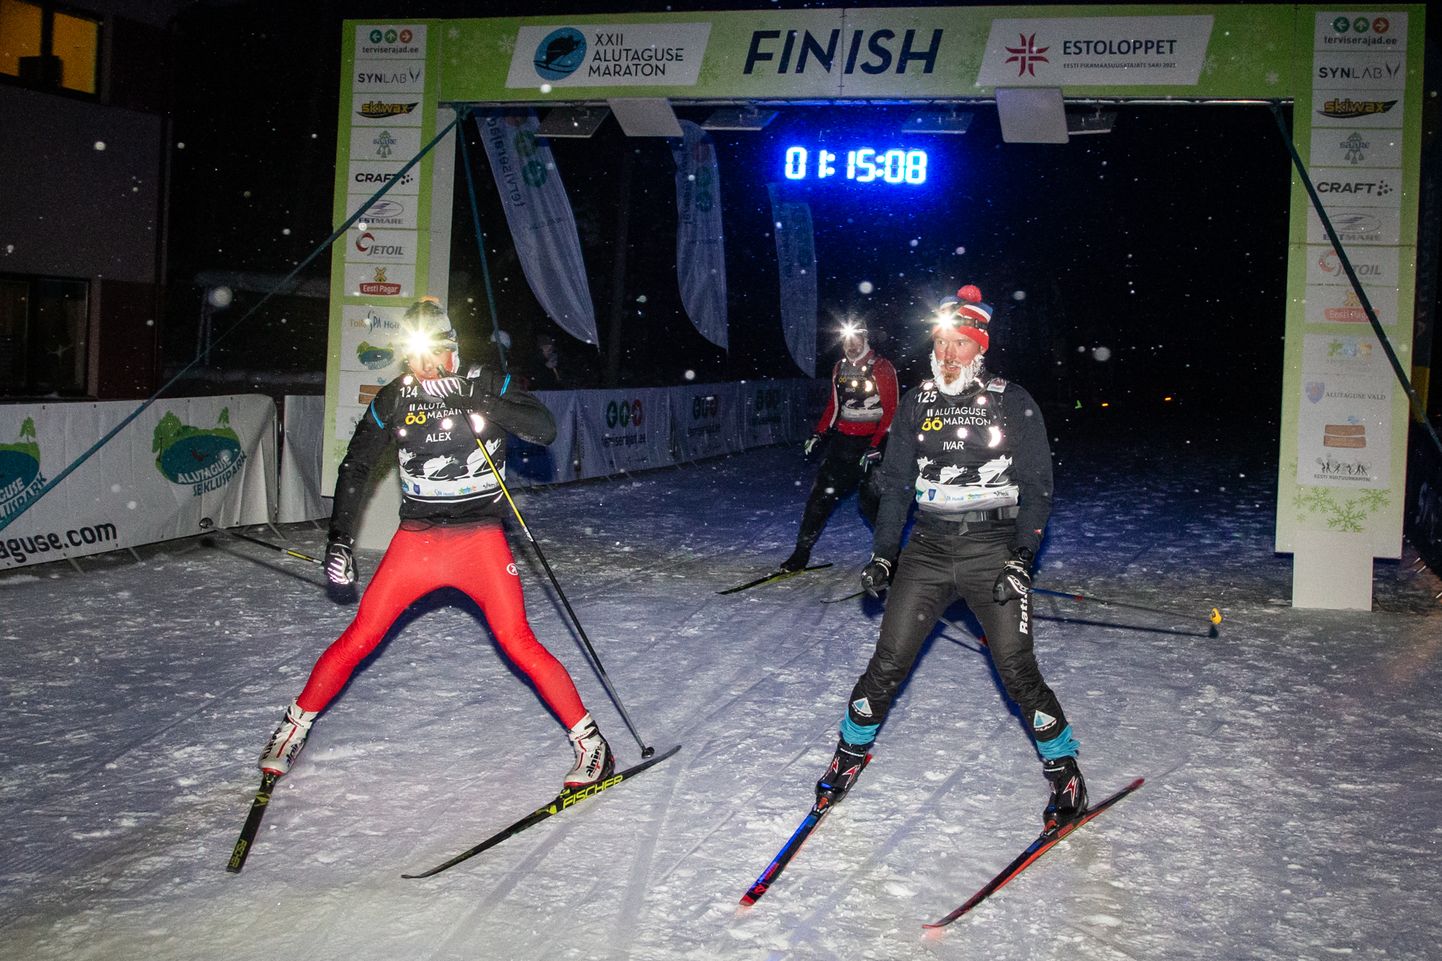 Изюминкой программы Алутагузеского марафона стал проходящий в пятницу при свете налобных фонариков ночной марафон, благодаря которому многие любители лыжного спорта приезжают в Ида-Вирумаа на несколько дней.